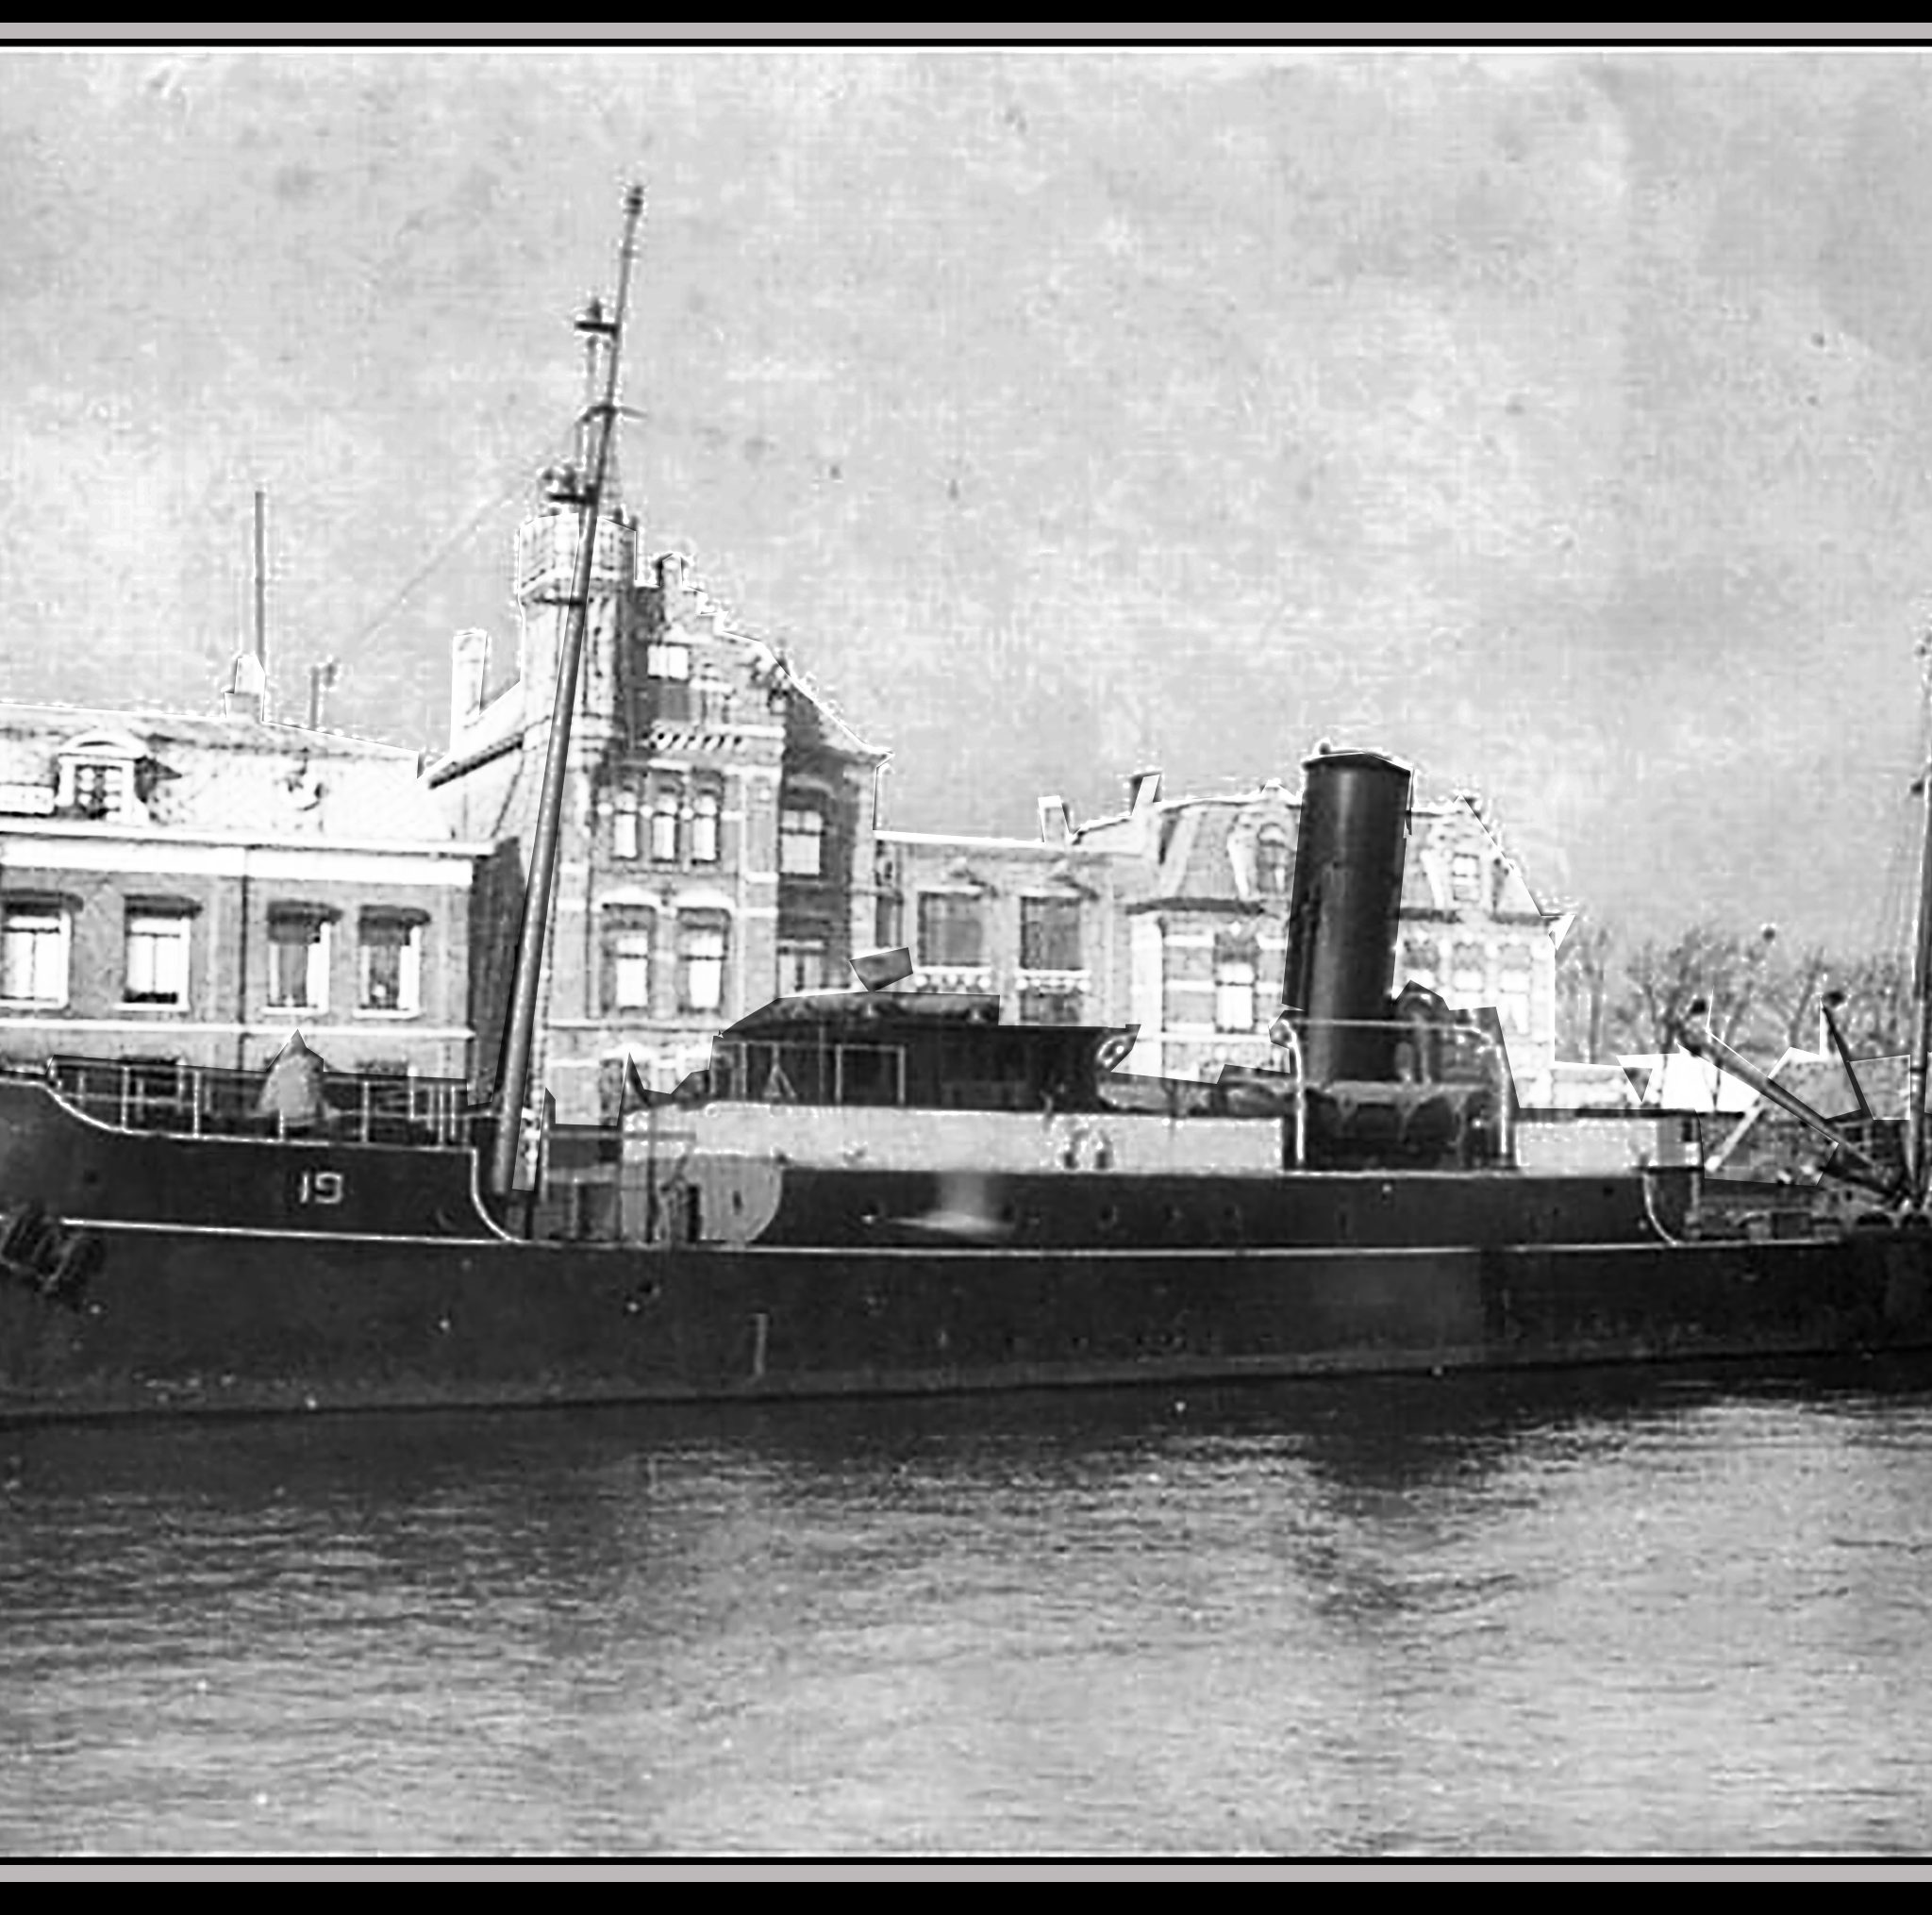 Stoomloodsvaartuig 19 was eigenlijk een marineschip, omdat het Loodswezen onder de Koninklijke Marine viel. Hier ligt het schip nog vredig in haar thuishaven Maassluis.